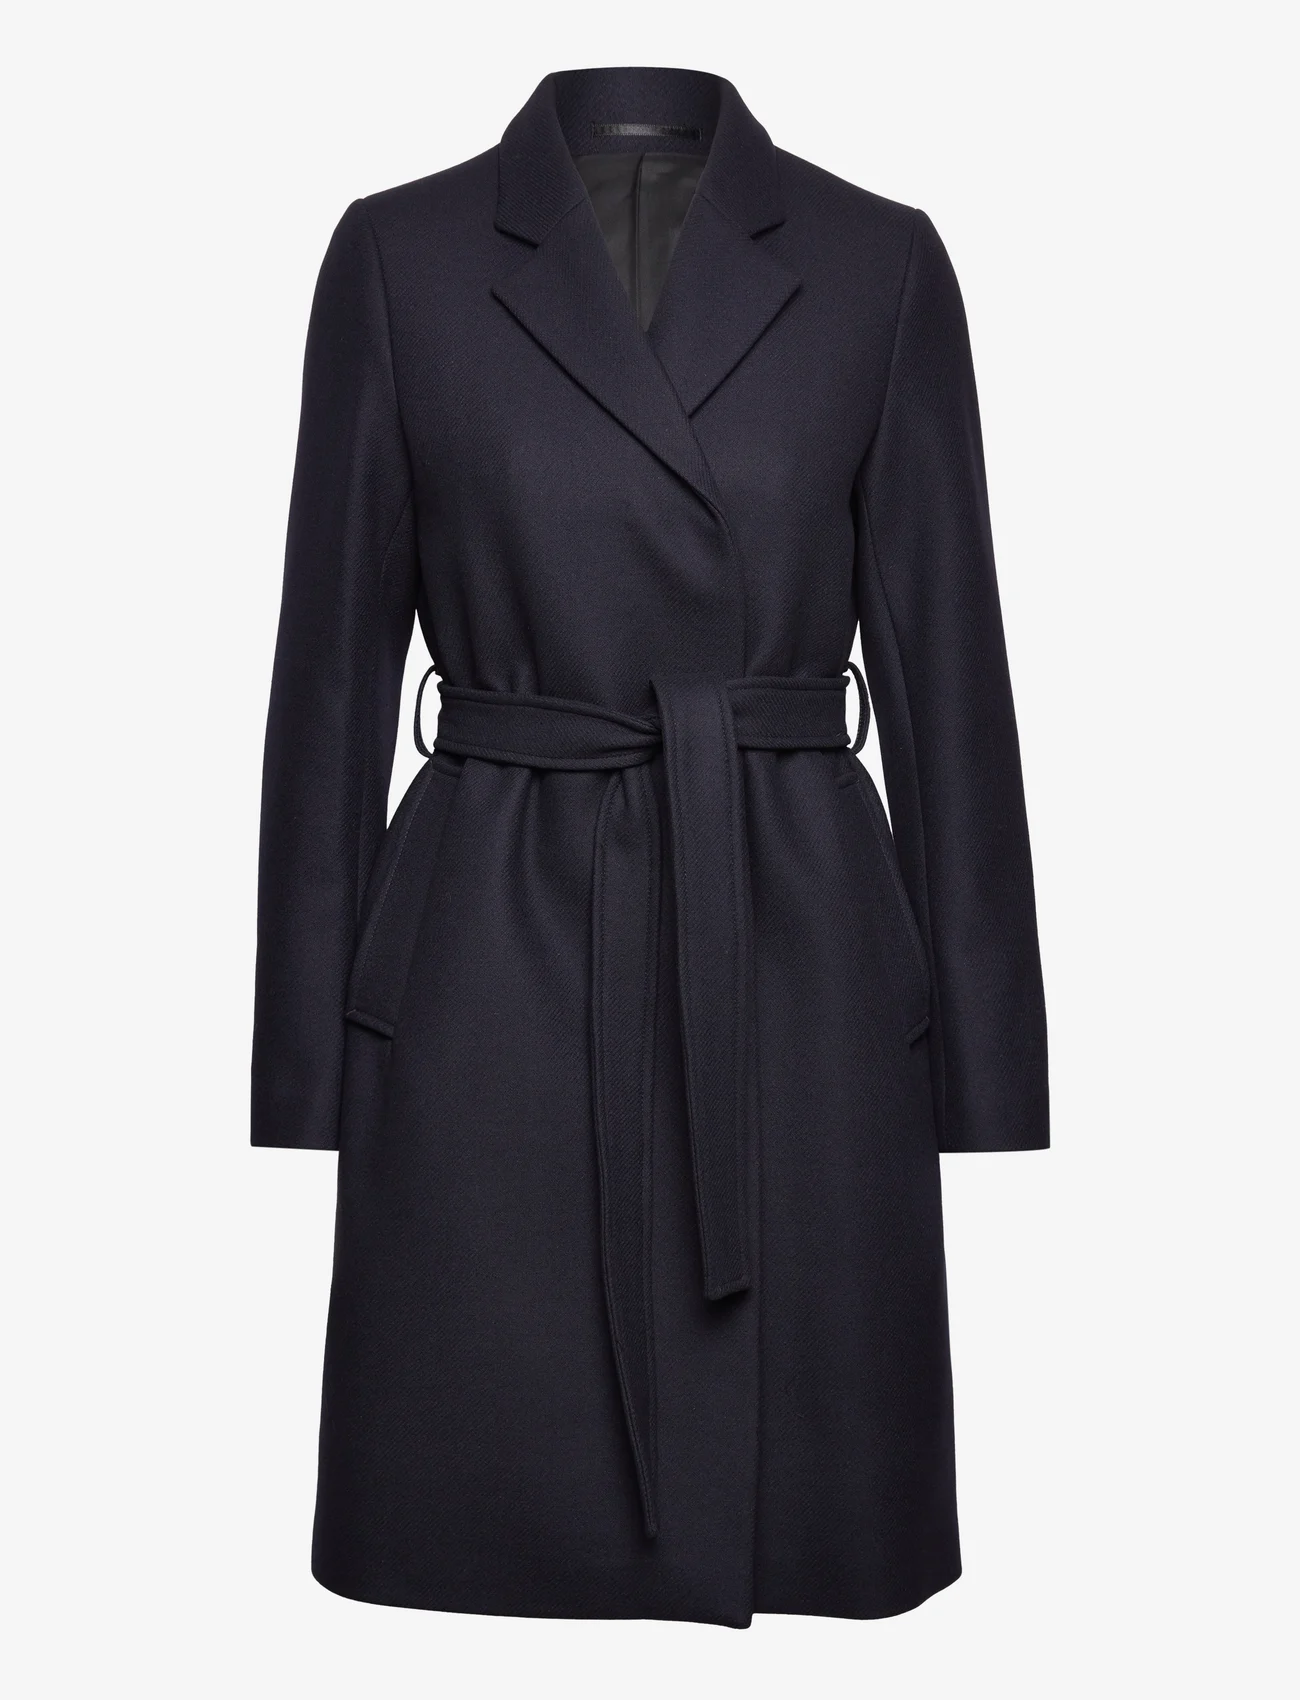 Filippa K - Kaya Coat - winter coats - navy - 0